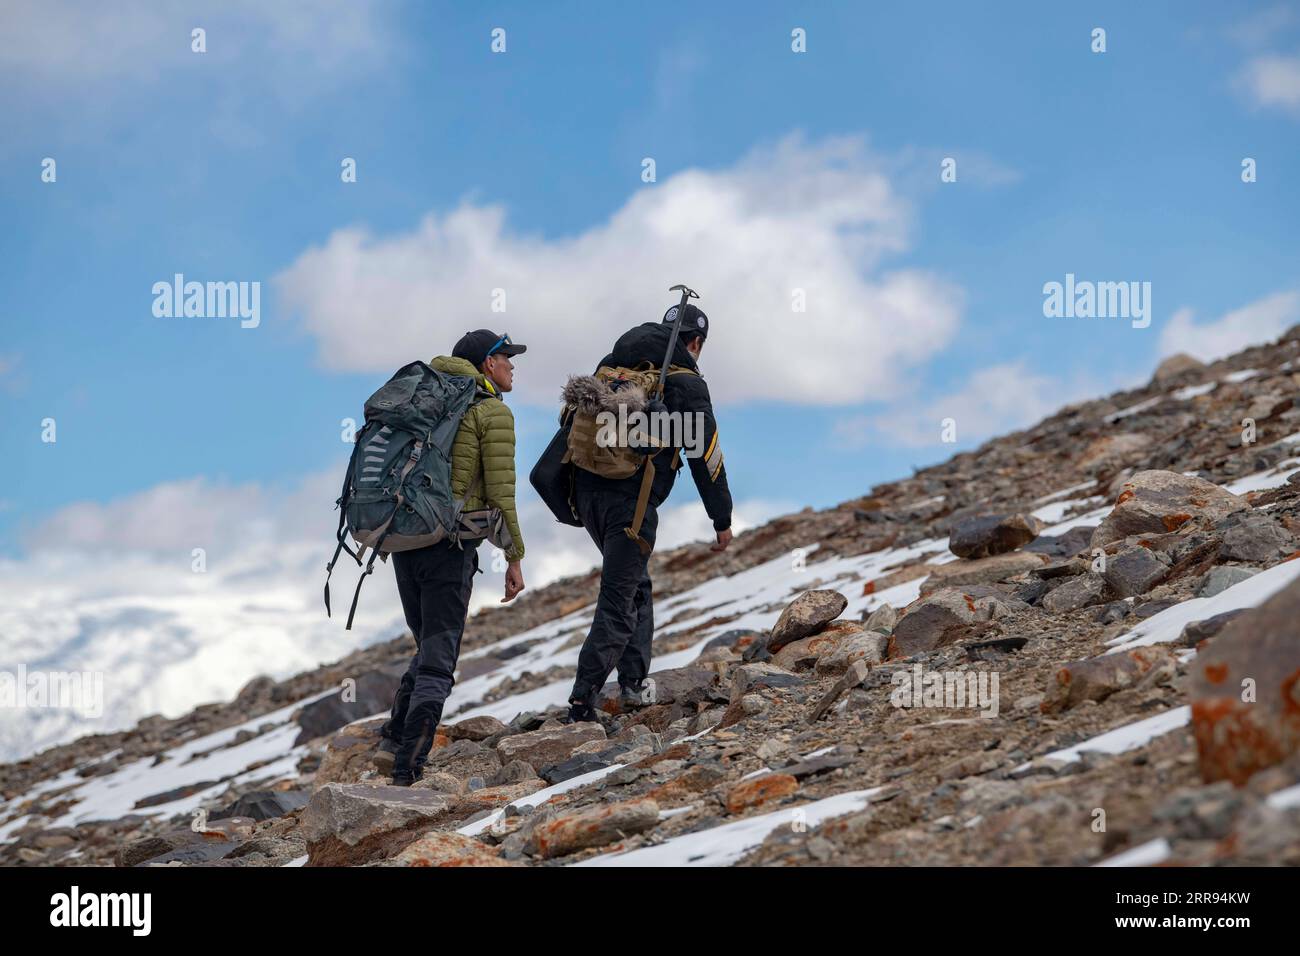 210528 -- URUMQI, 28 maggio 2021 -- Bikmirza Turdil R prende parte ad un addestramento mirato sulla Muztagh Ata nella regione autonoma di Xinjiang Uygur della Cina nord-occidentale, 15 maggio 2021. Bikmirza, un allevatore di 24 anni, nacque e crebbe ai piedi del Muztagh Ata, un picco con un'altitudine di oltre 7.500 metri, nella regione autonoma di Uygur dello Xinjiang Pamir in Cina. Ha iniziato a lavorare come guida aiutando gli scalatori a trasportare attrezzature e provviste all'età di 18 anni. Scalare il Muztagh Ata, un simbolo di coraggio, è anche considerato come la cerimonia di raggiungimento della maggiore età per i giovani locali. A Subax Villag Foto Stock